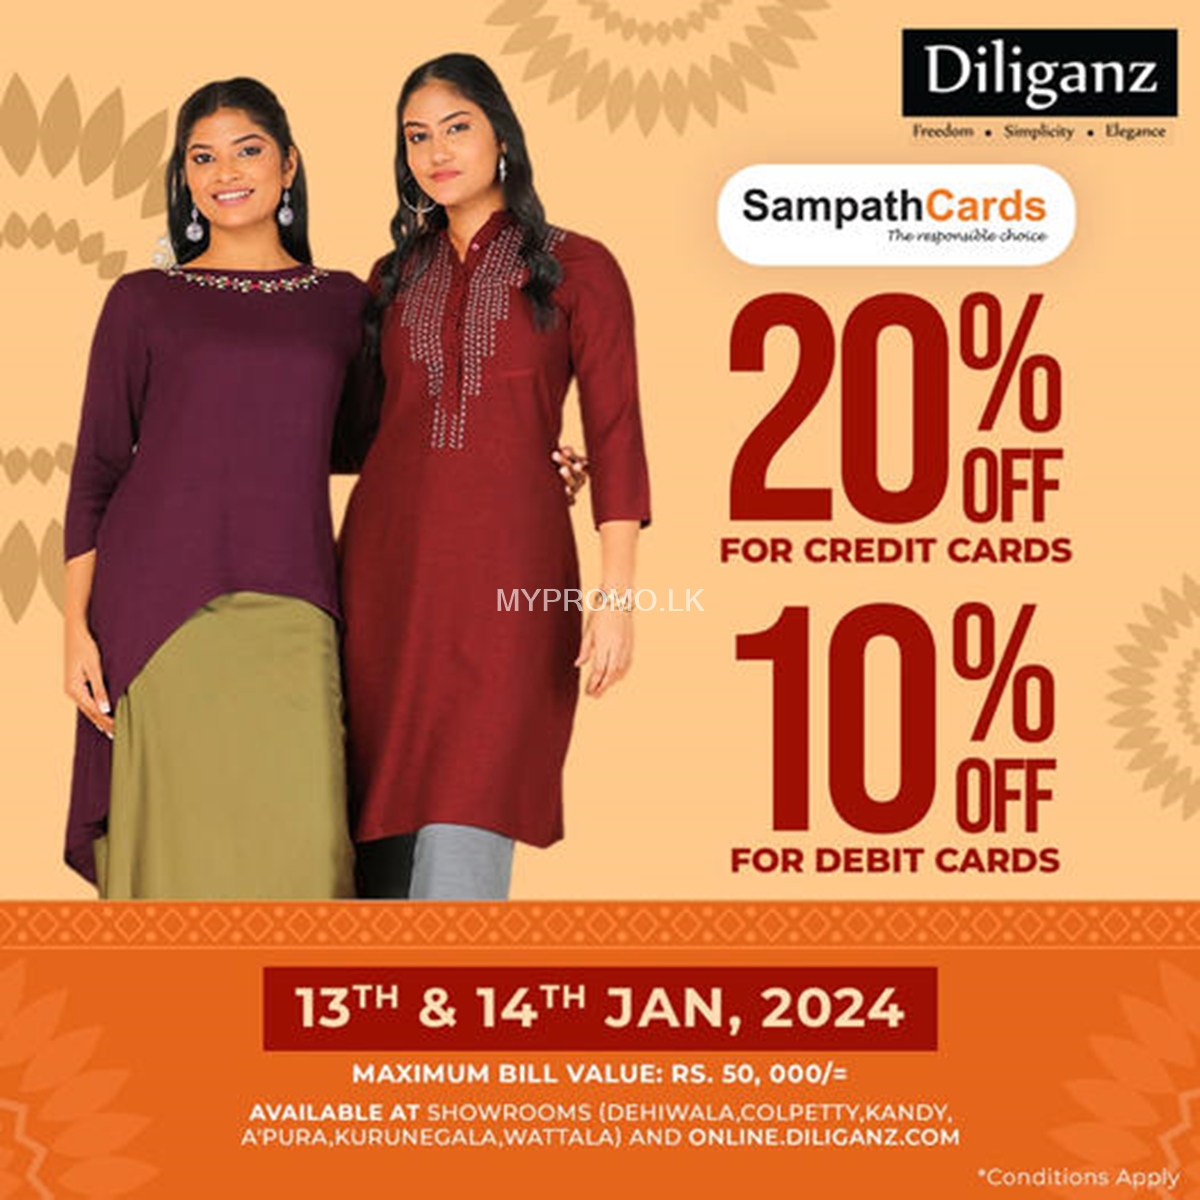 Enjoy up 20% Off for Sampath Bank Cards at Diliganz